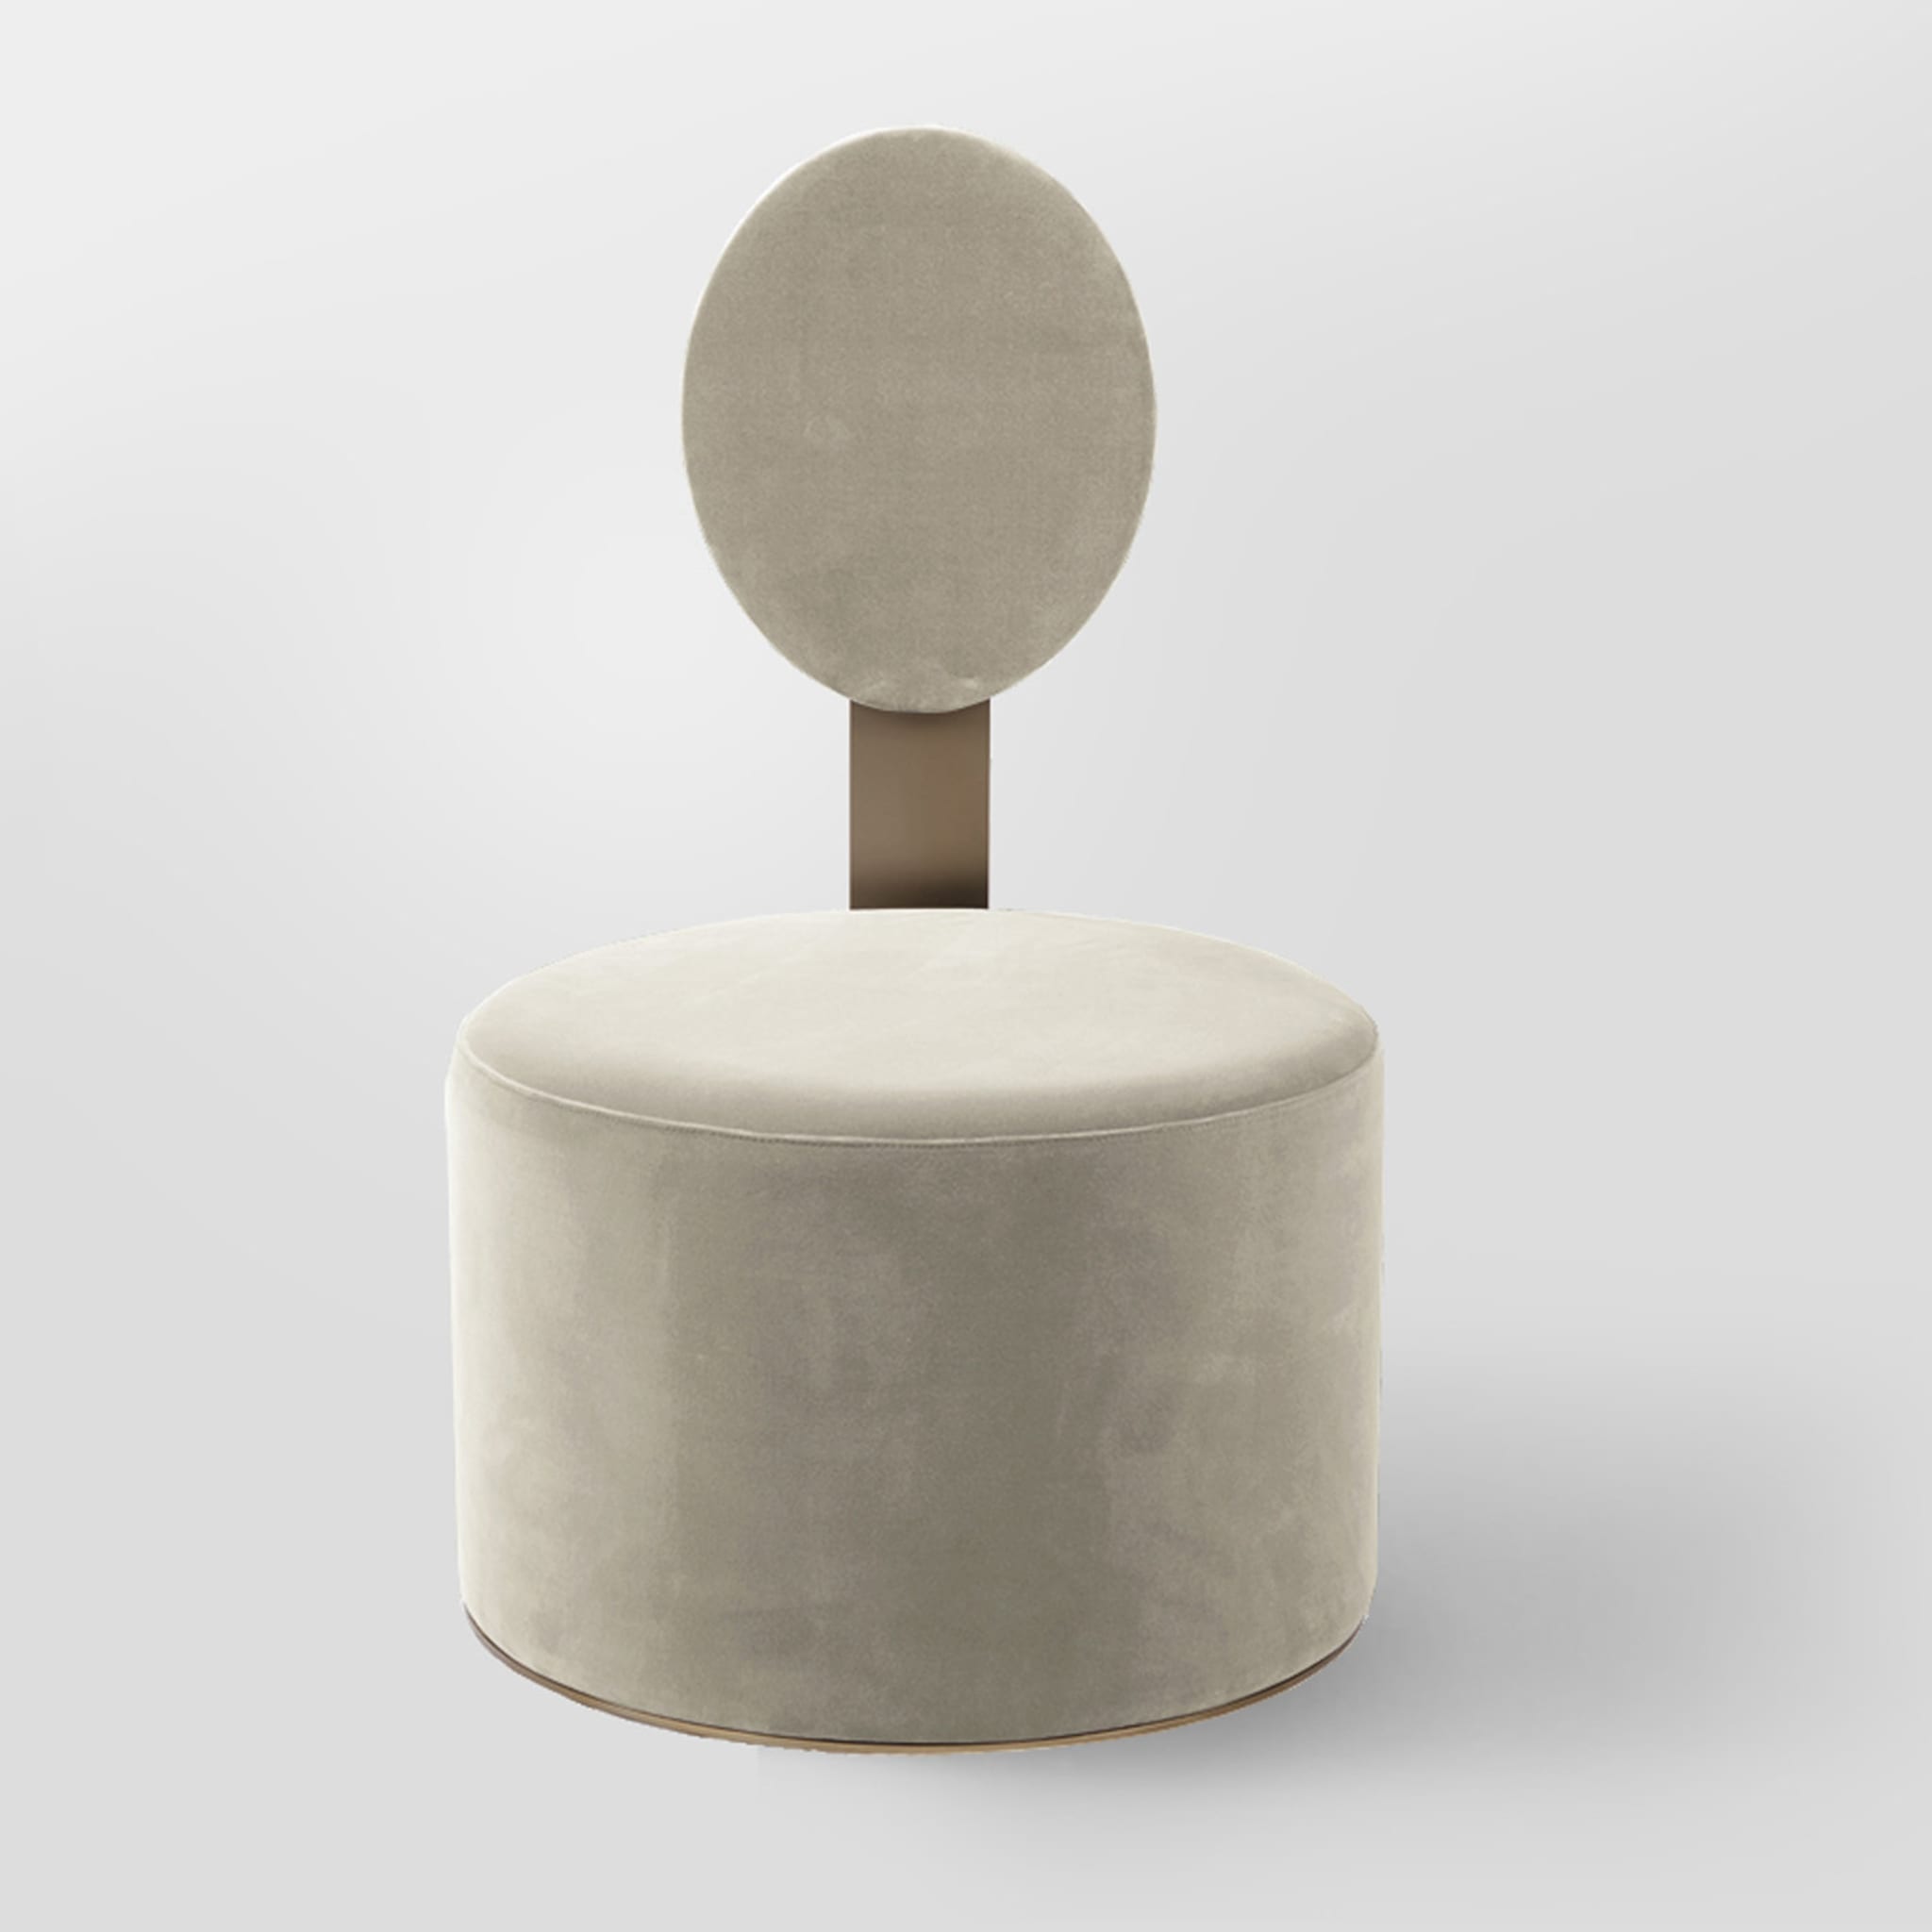 Pop White Chair by Artefatto Design Studio - Alternative view 1